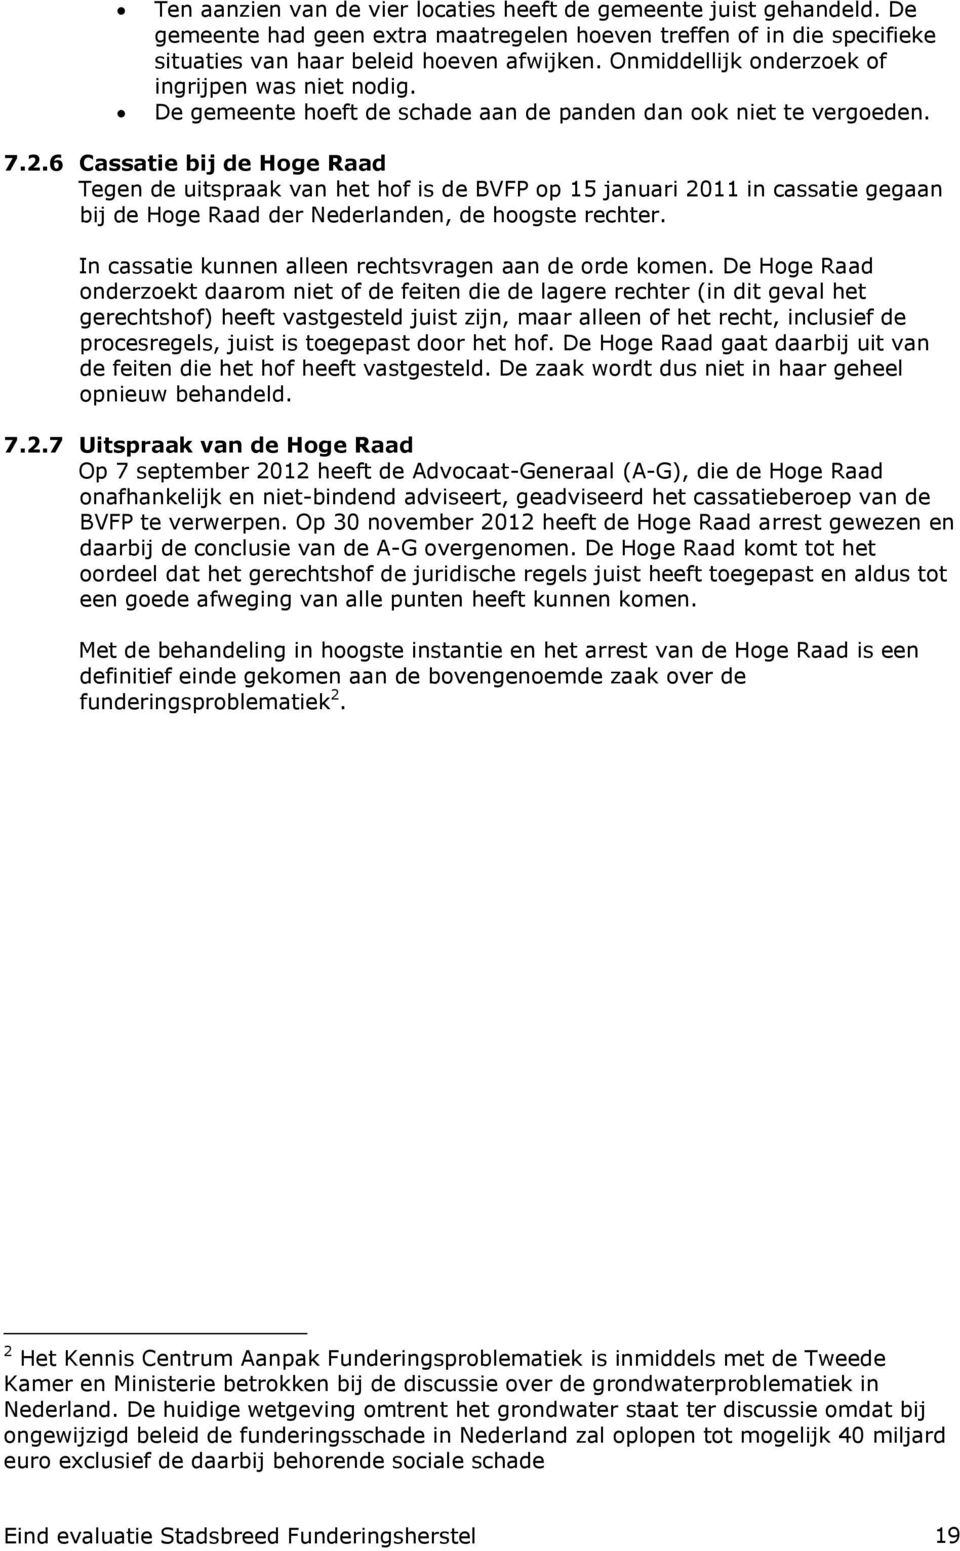 6 Cassatie bij de Hoge Raad Tegen de uitspraak van het hof is de BVFP op 15 januari 2011 in cassatie gegaan bij de Hoge Raad der Nederlanden, de hoogste rechter.